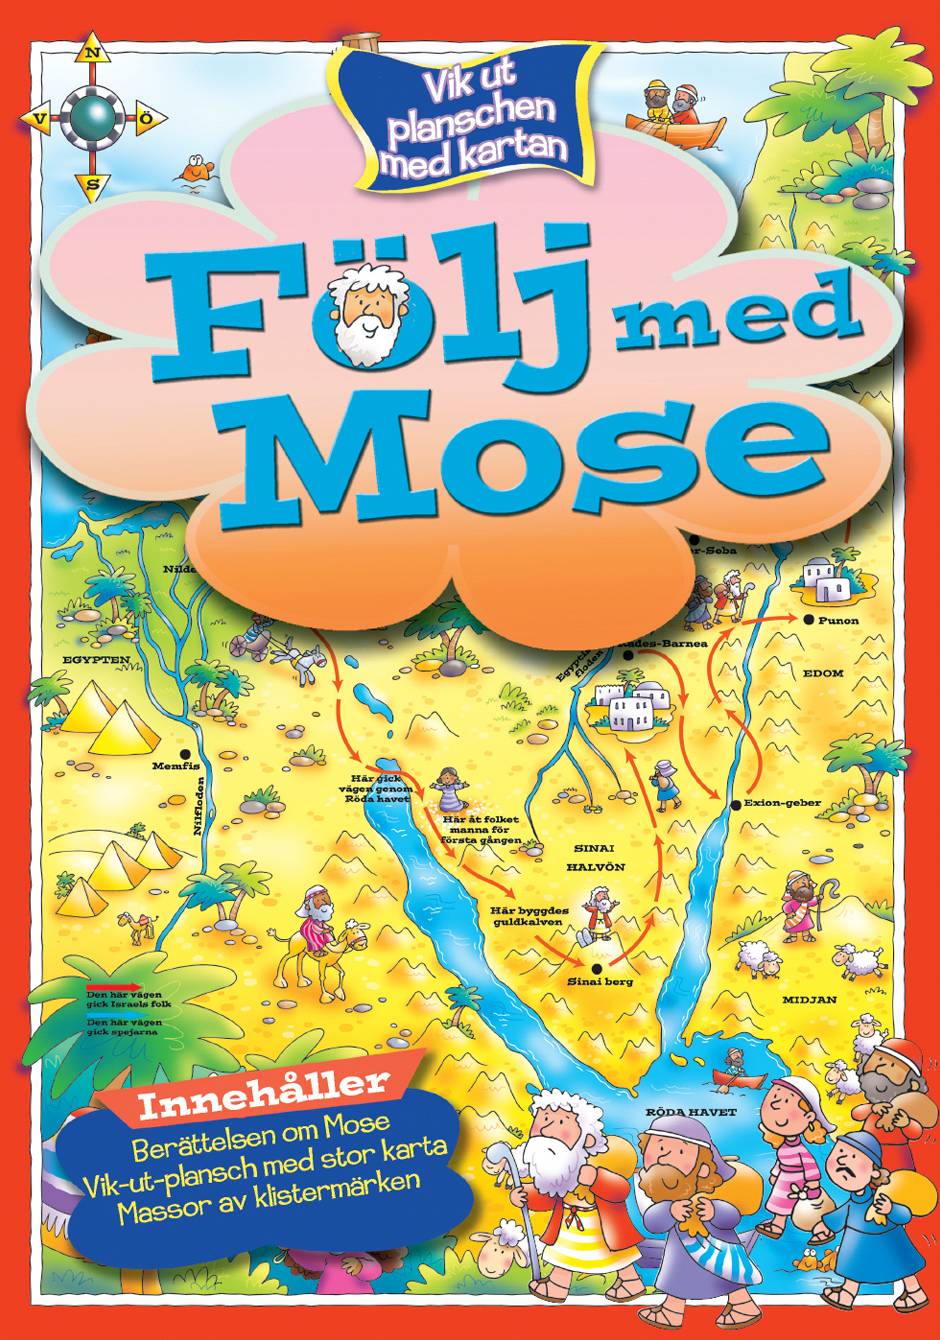 Följ med Mose